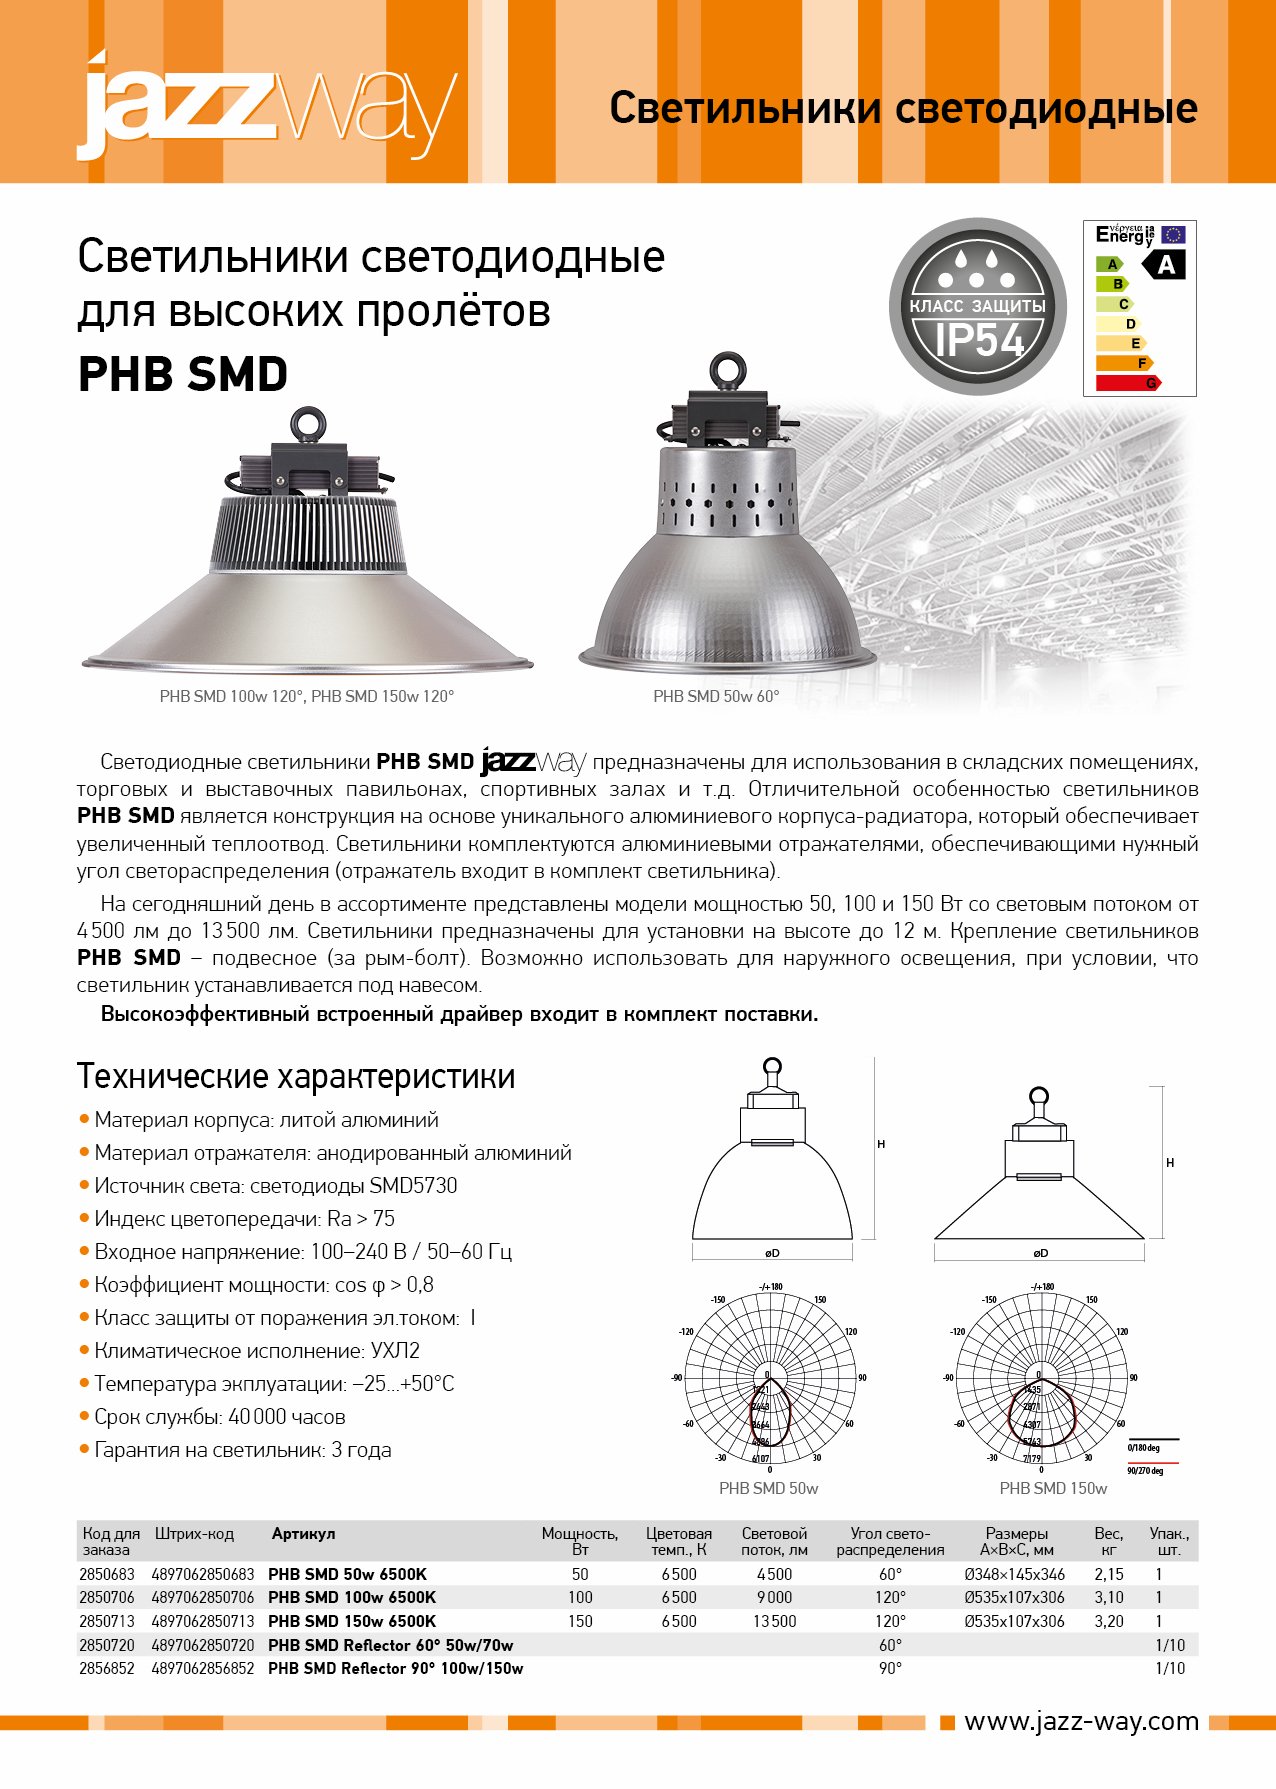 Светильники светодиодные для высоких пролётов PHB SMD